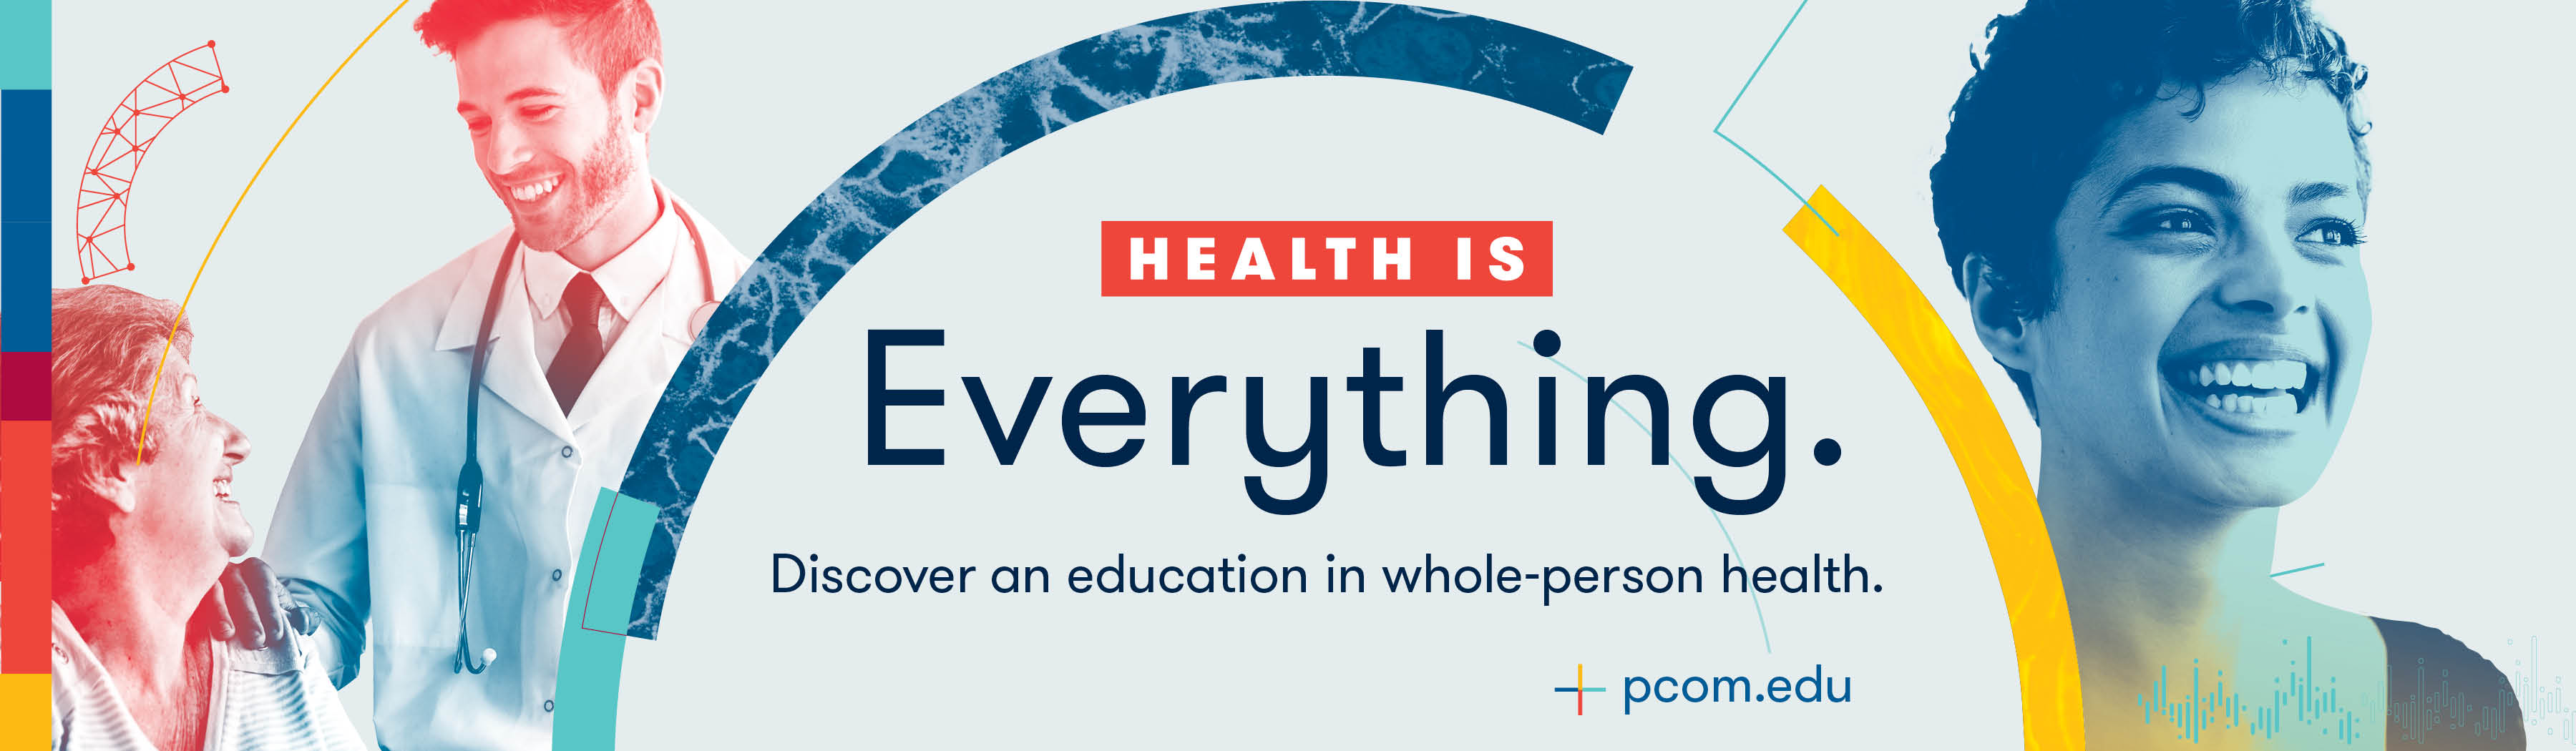 pcom.edu whole-person health billboard campaign